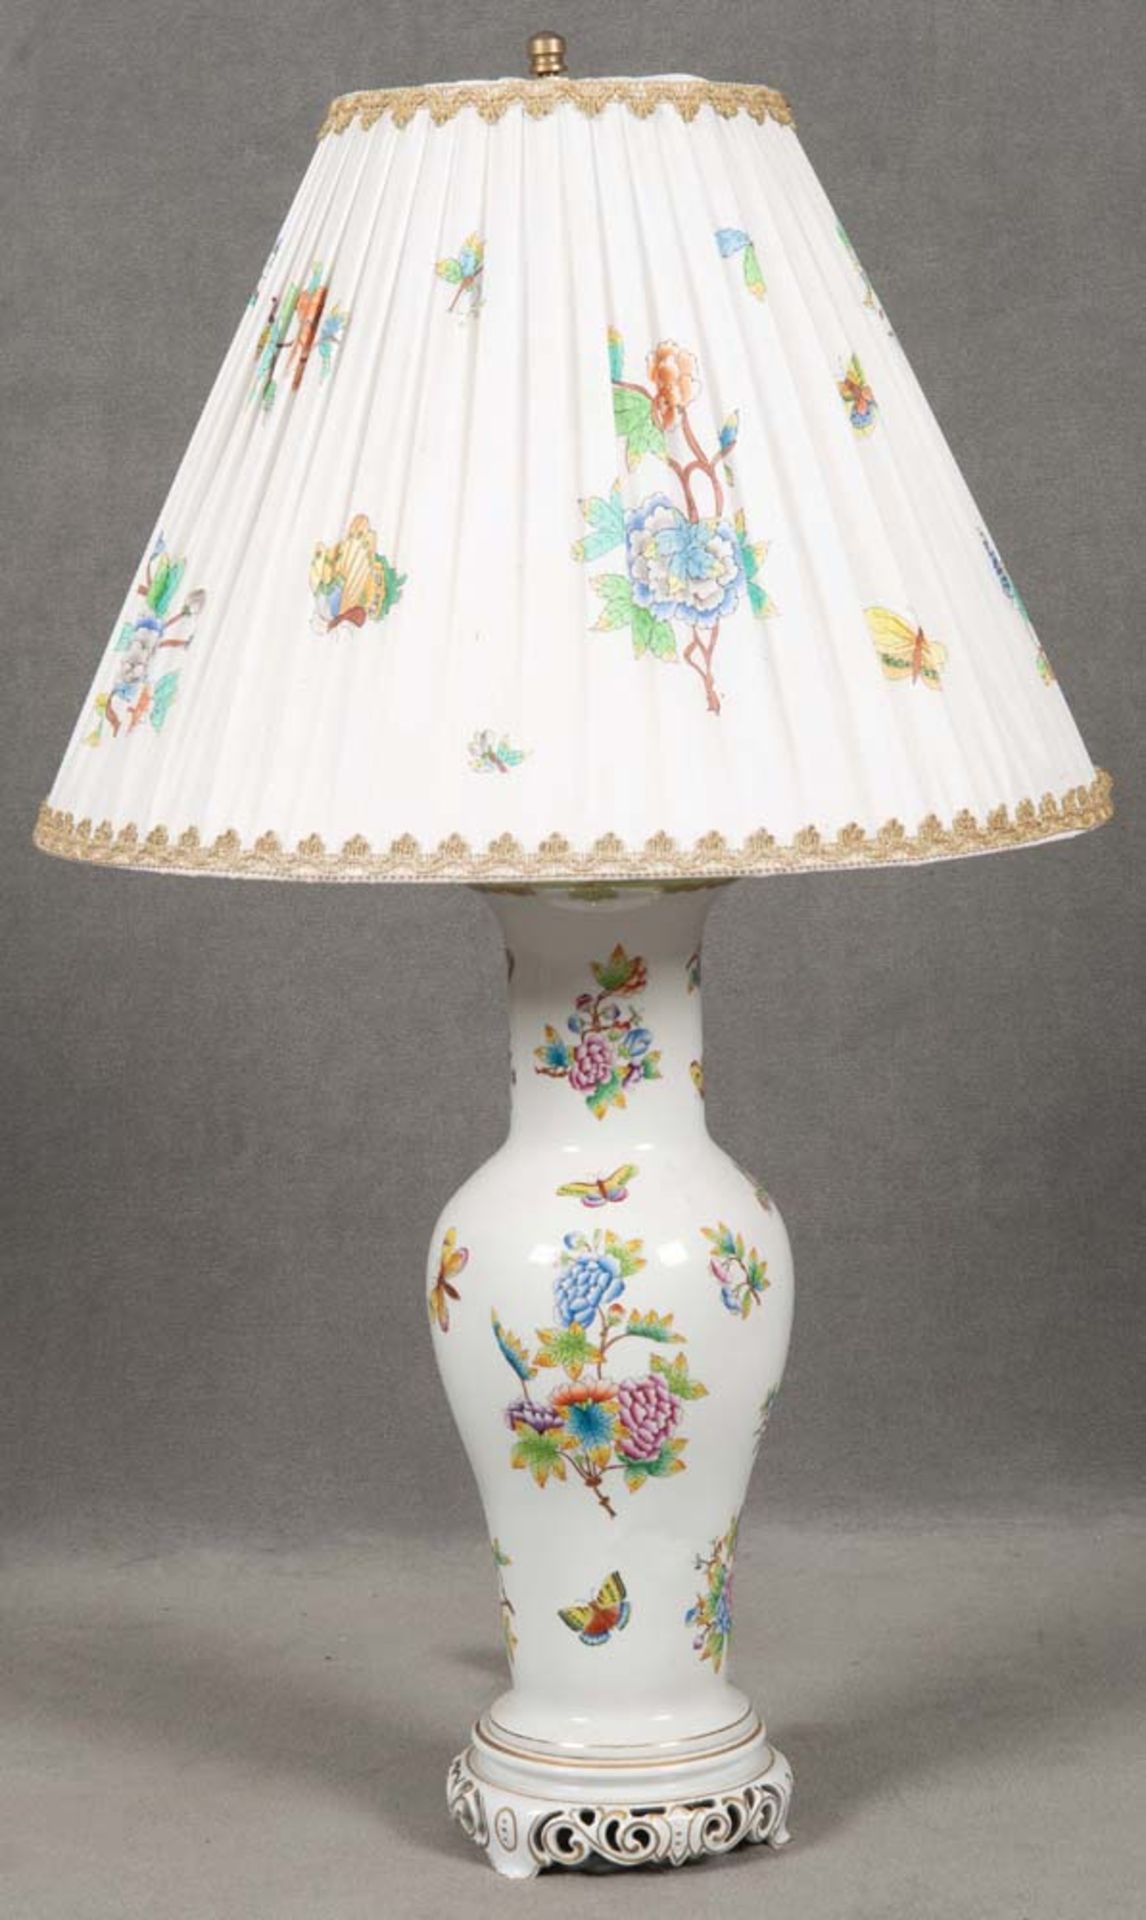 Porzellan-Tischlampe. Herend 20. Jh. Bunt bemalt mit Floral- und Insektendekor; Stoffschirm mit